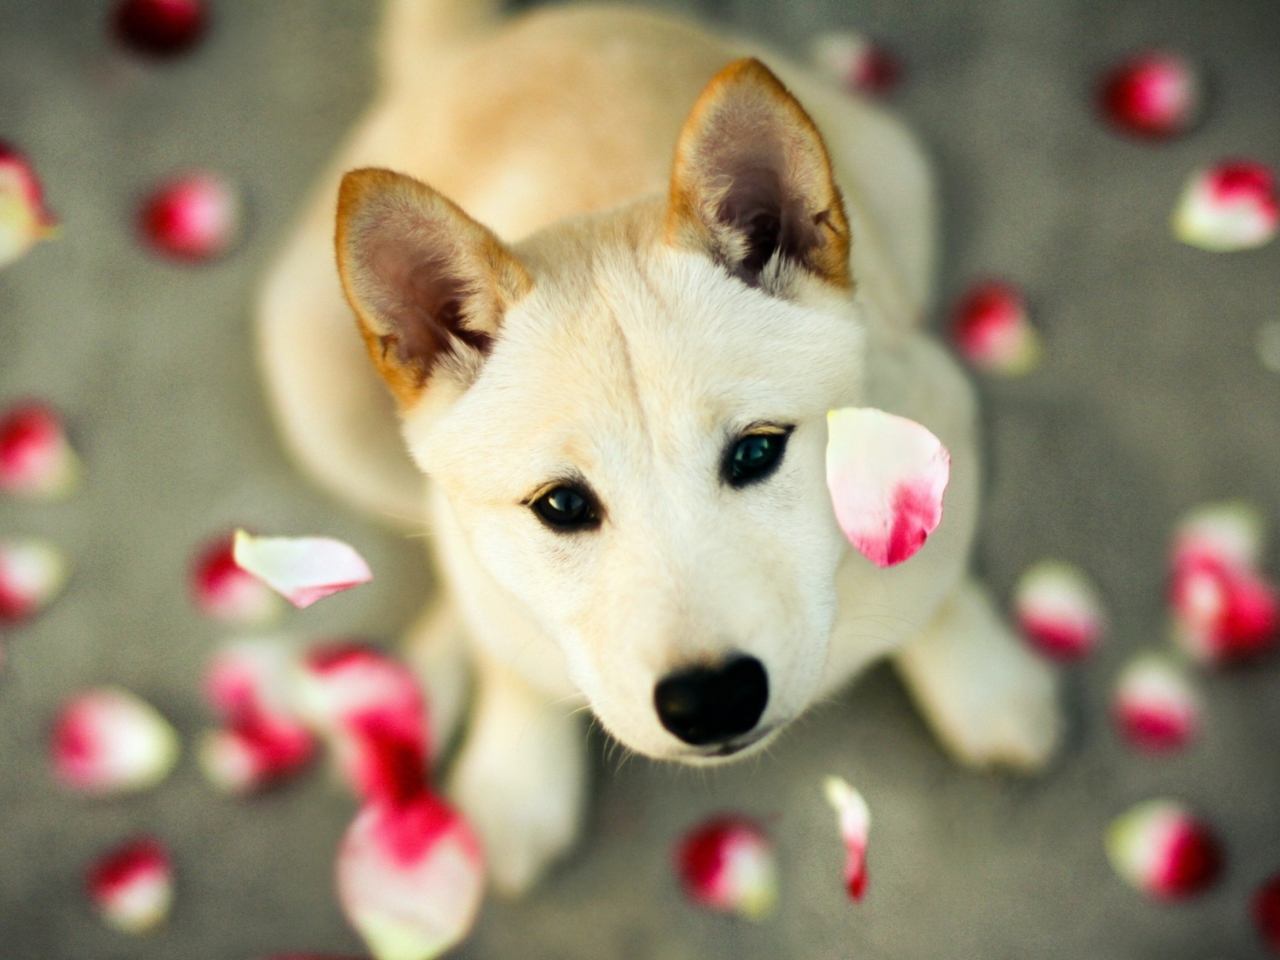 Dog And Rose Petals wallpaper 1280x960